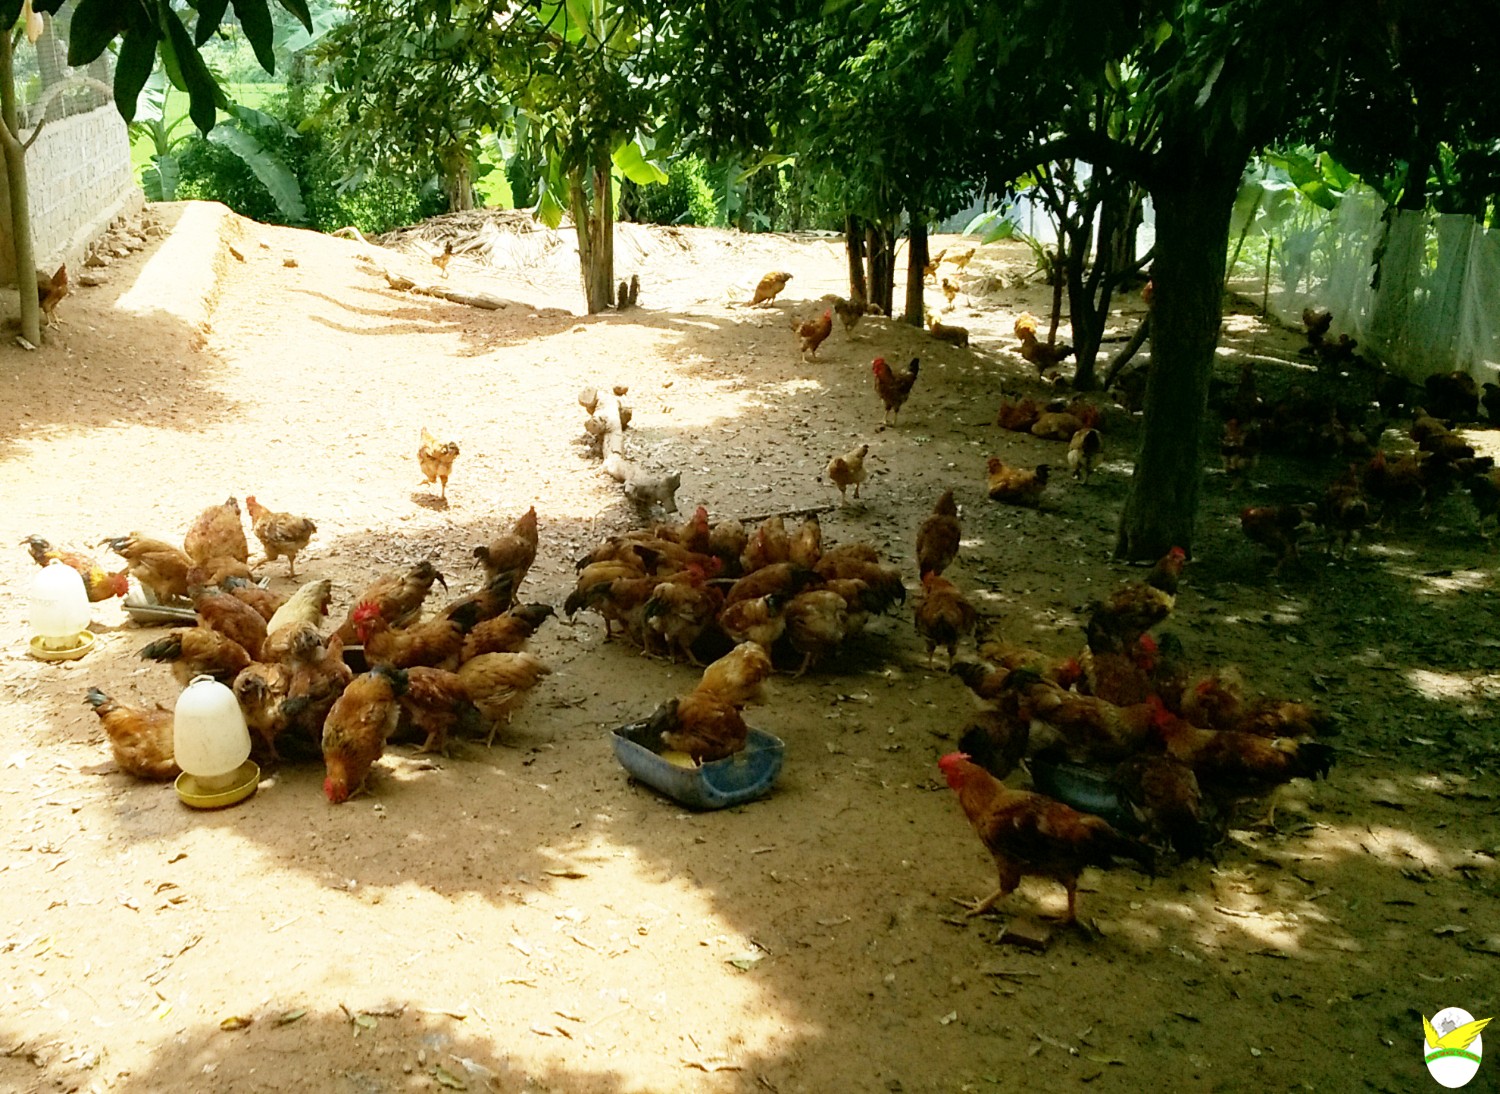 Mô hình nuôi gà trên đệm lót sinh học cho hiệu quả kinh tế cao ở Gia Lai   Kinh nghiệm làm ăn  Báo ảnh Dân tộc và Miền núi